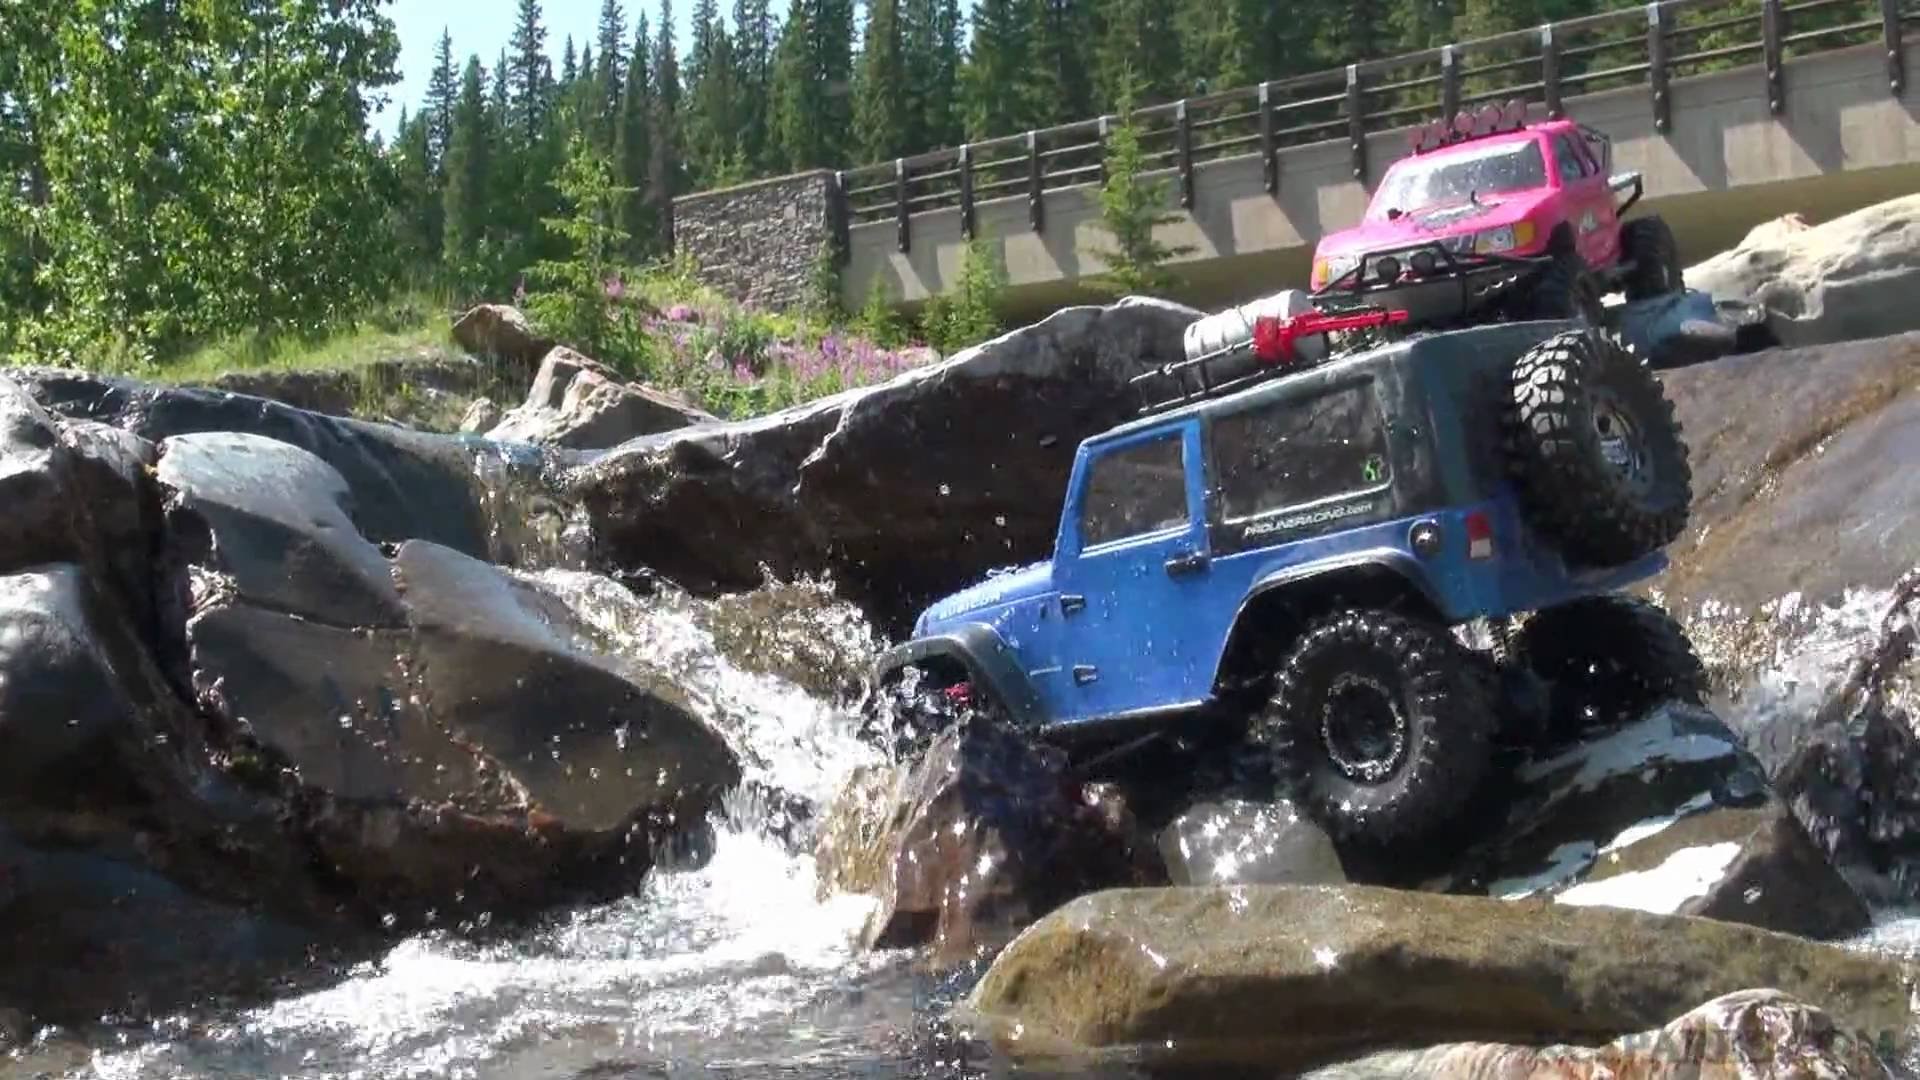 jeep, Suv, 4x4, Truck, Offroad Wallpaper